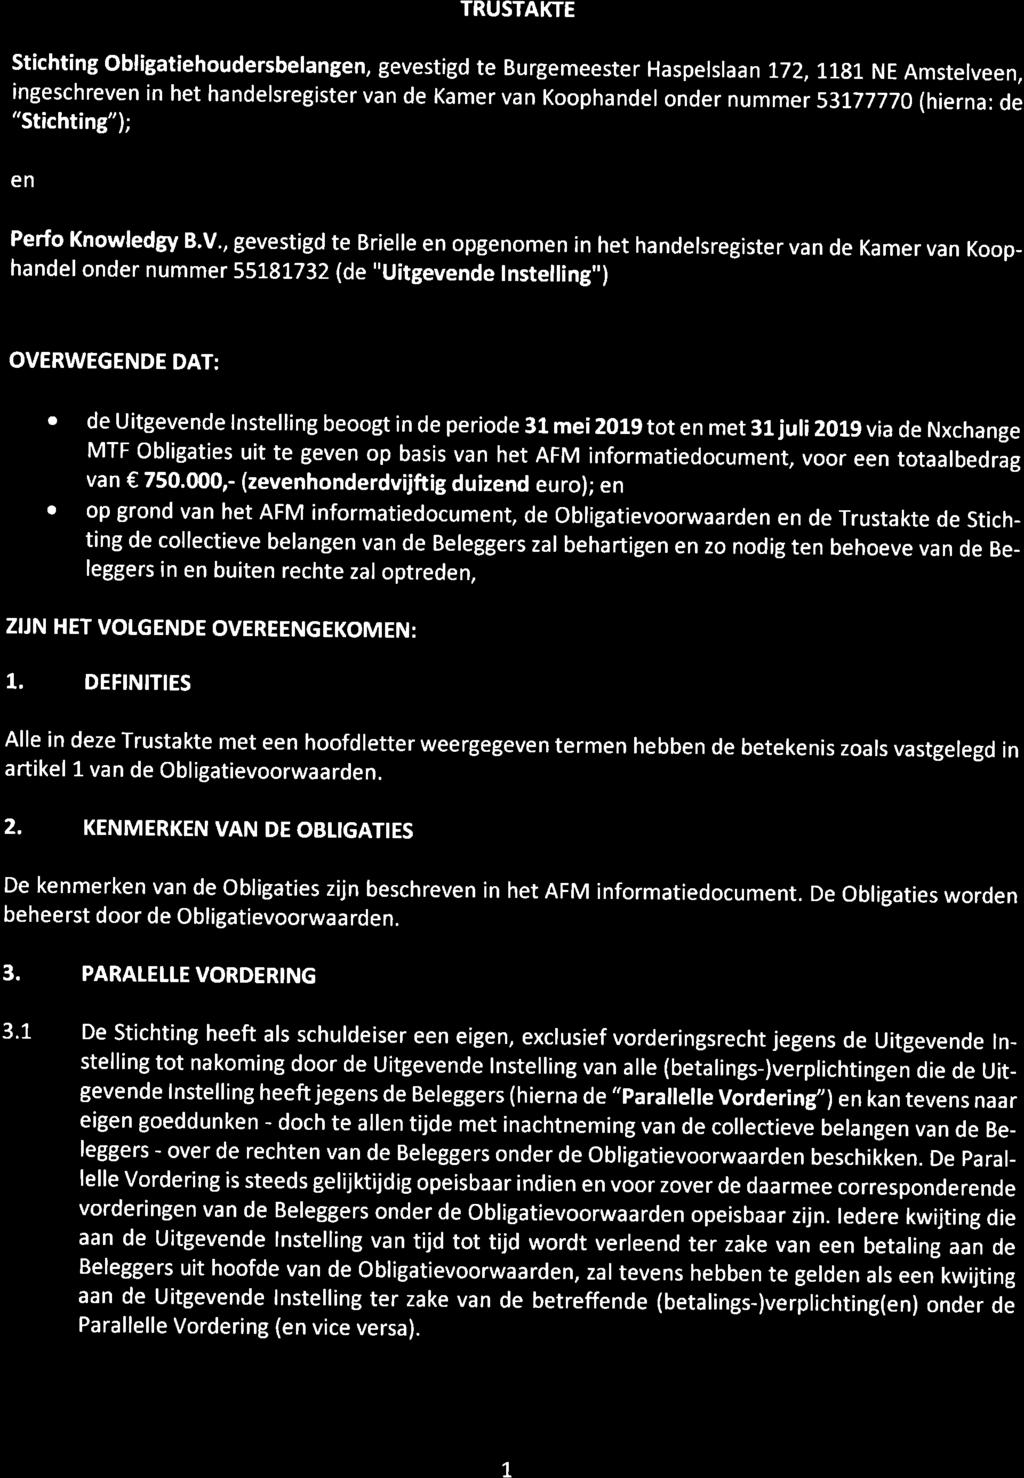 TRUSTAKTE Stichting obligatiehoudersbelangen, gevestigd te Burgemeester Haspelslaan 1'7z,1.rg'J.